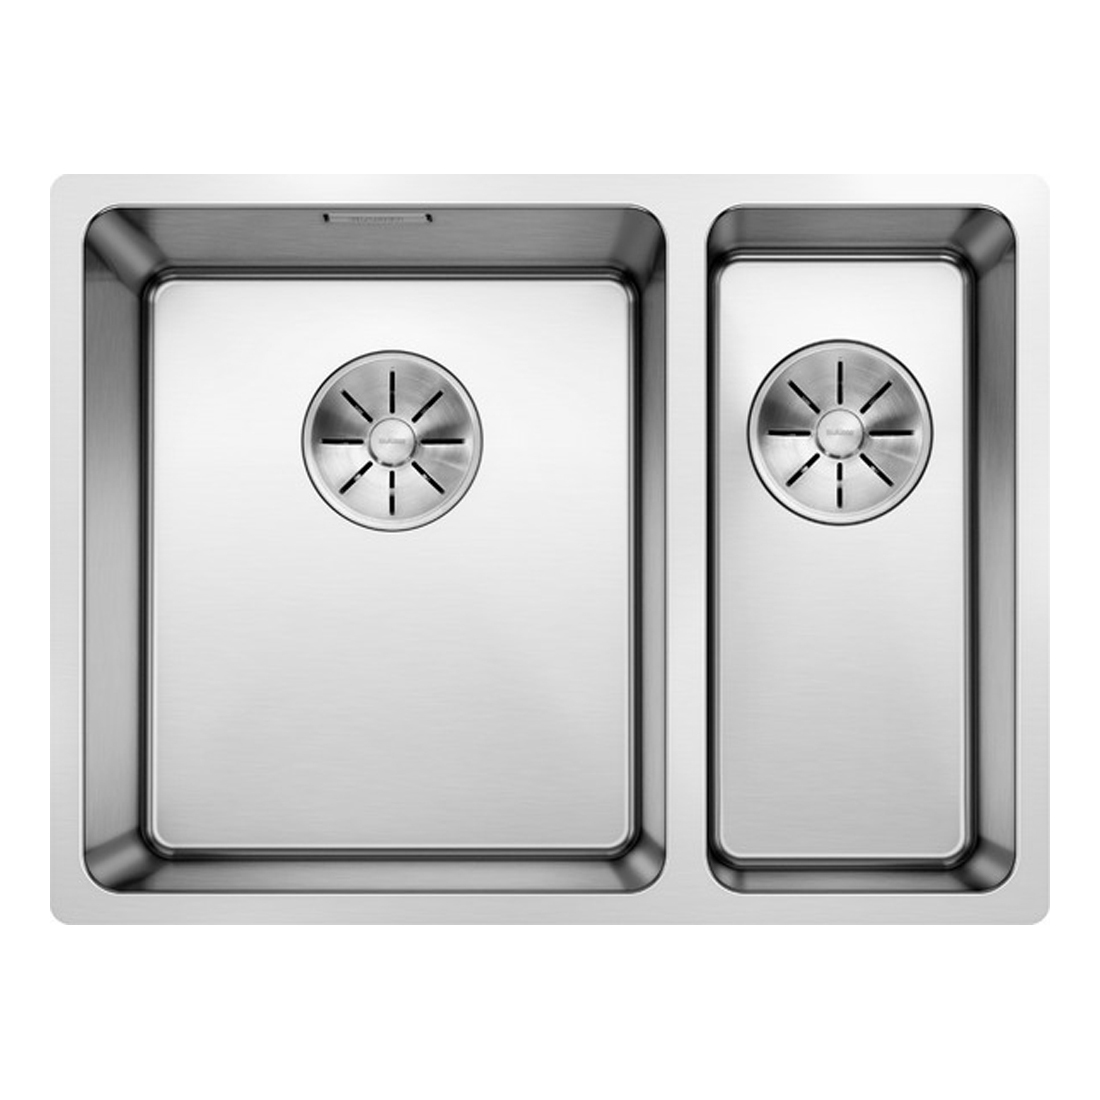 Кухонная мойка Blanco Andano 340/180-U L полированная сталь кухонная мойка blanco axis iii 6s if правая зеркальная полировка